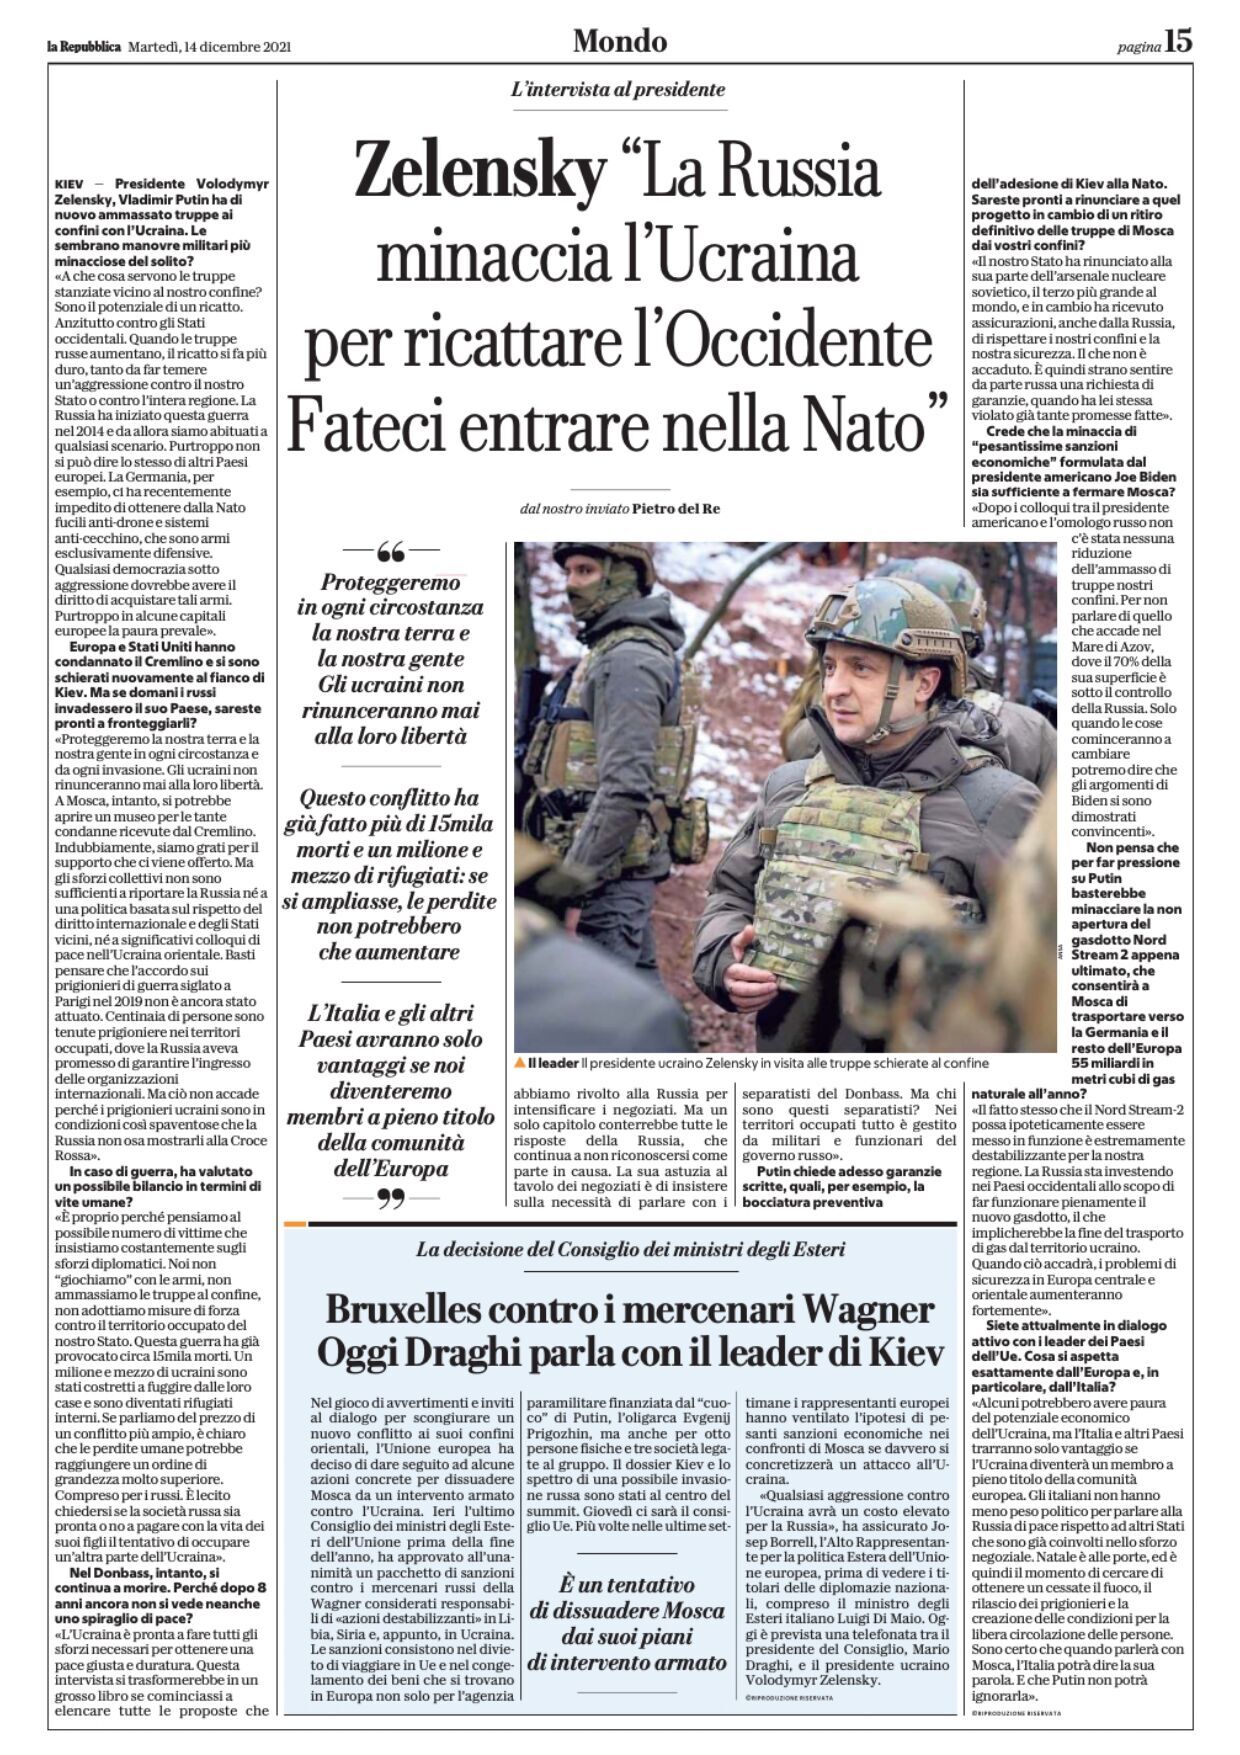 Владимир Зеленский на обложке итальянской газеты.